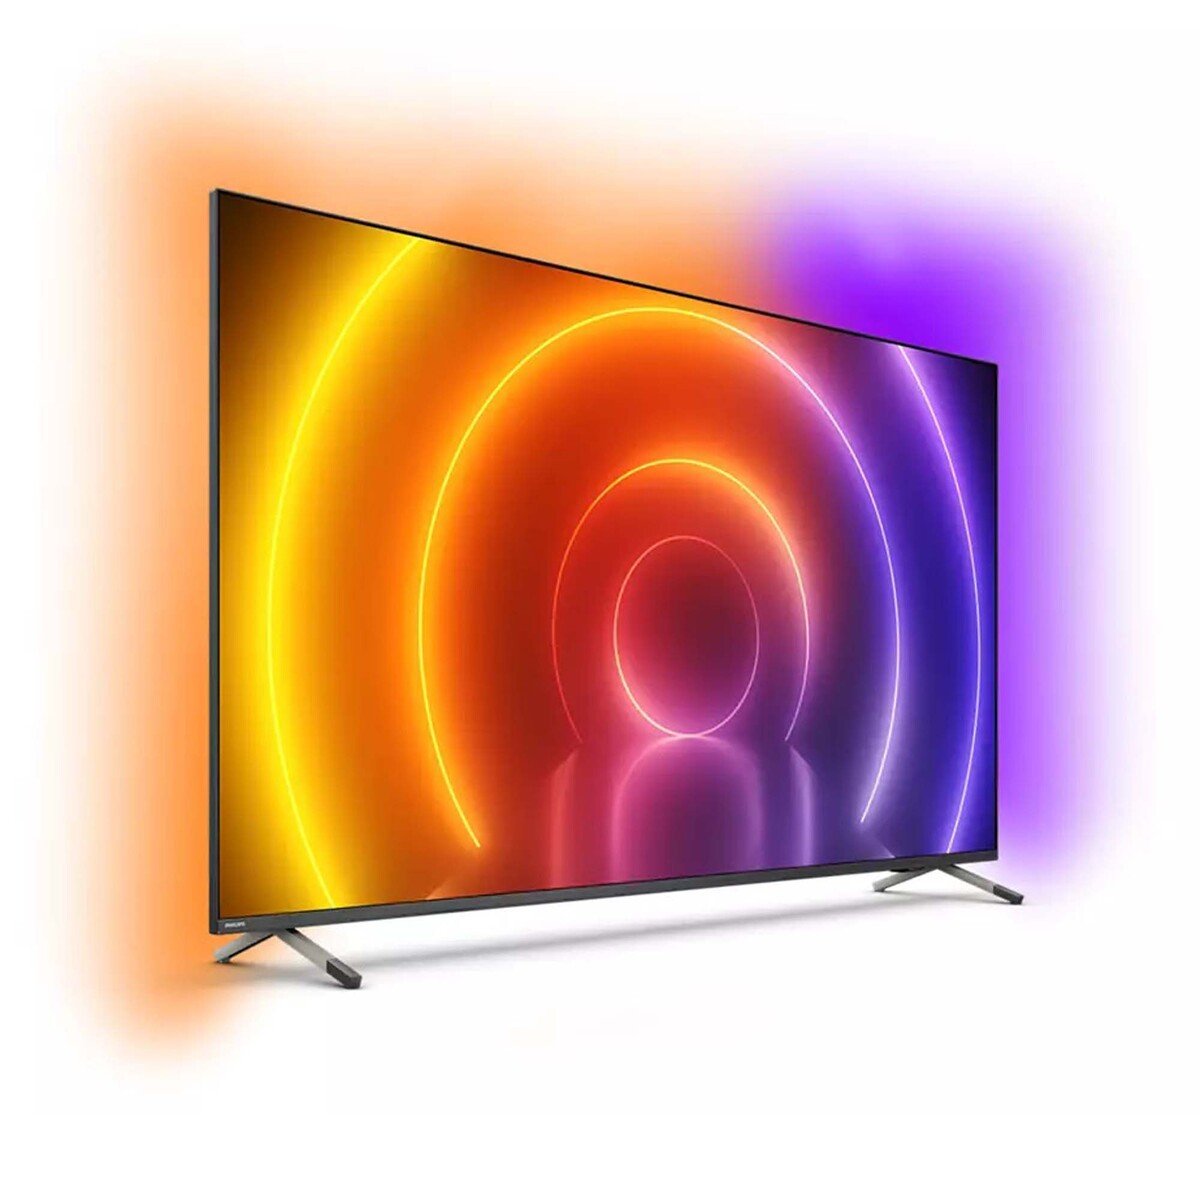 فيليبس تلفاز LED ذكي 4K دقة فائقة سلسلة 8500 65 بوصة، 65PUT8516/56